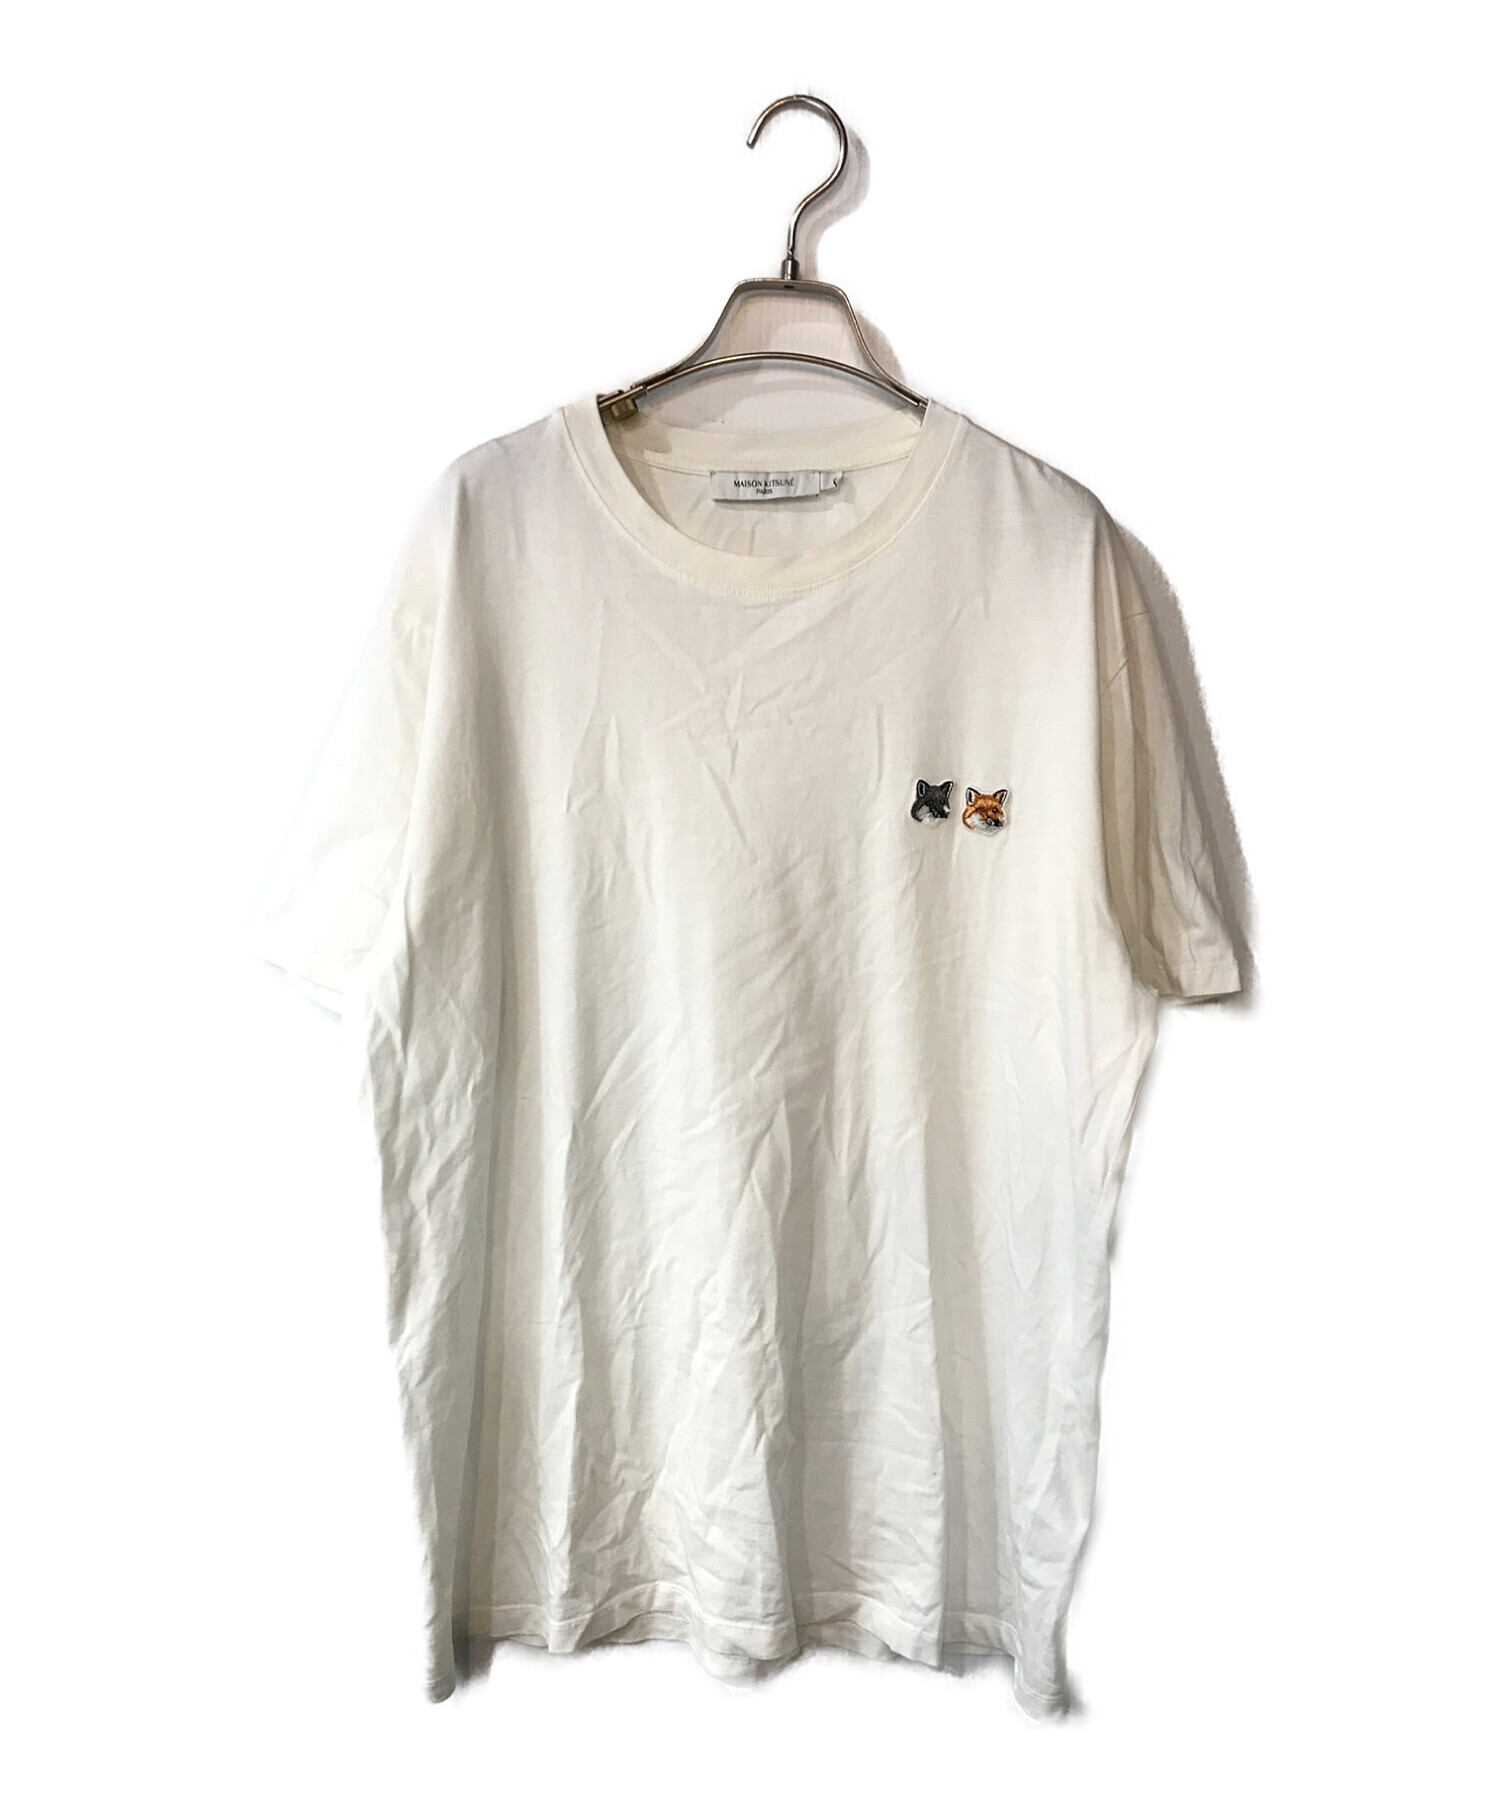 MAISON KITSUNE (メゾンキツネ) ダブルフォックスヘッドロゴTシャツ ホワイト サイズ:XL